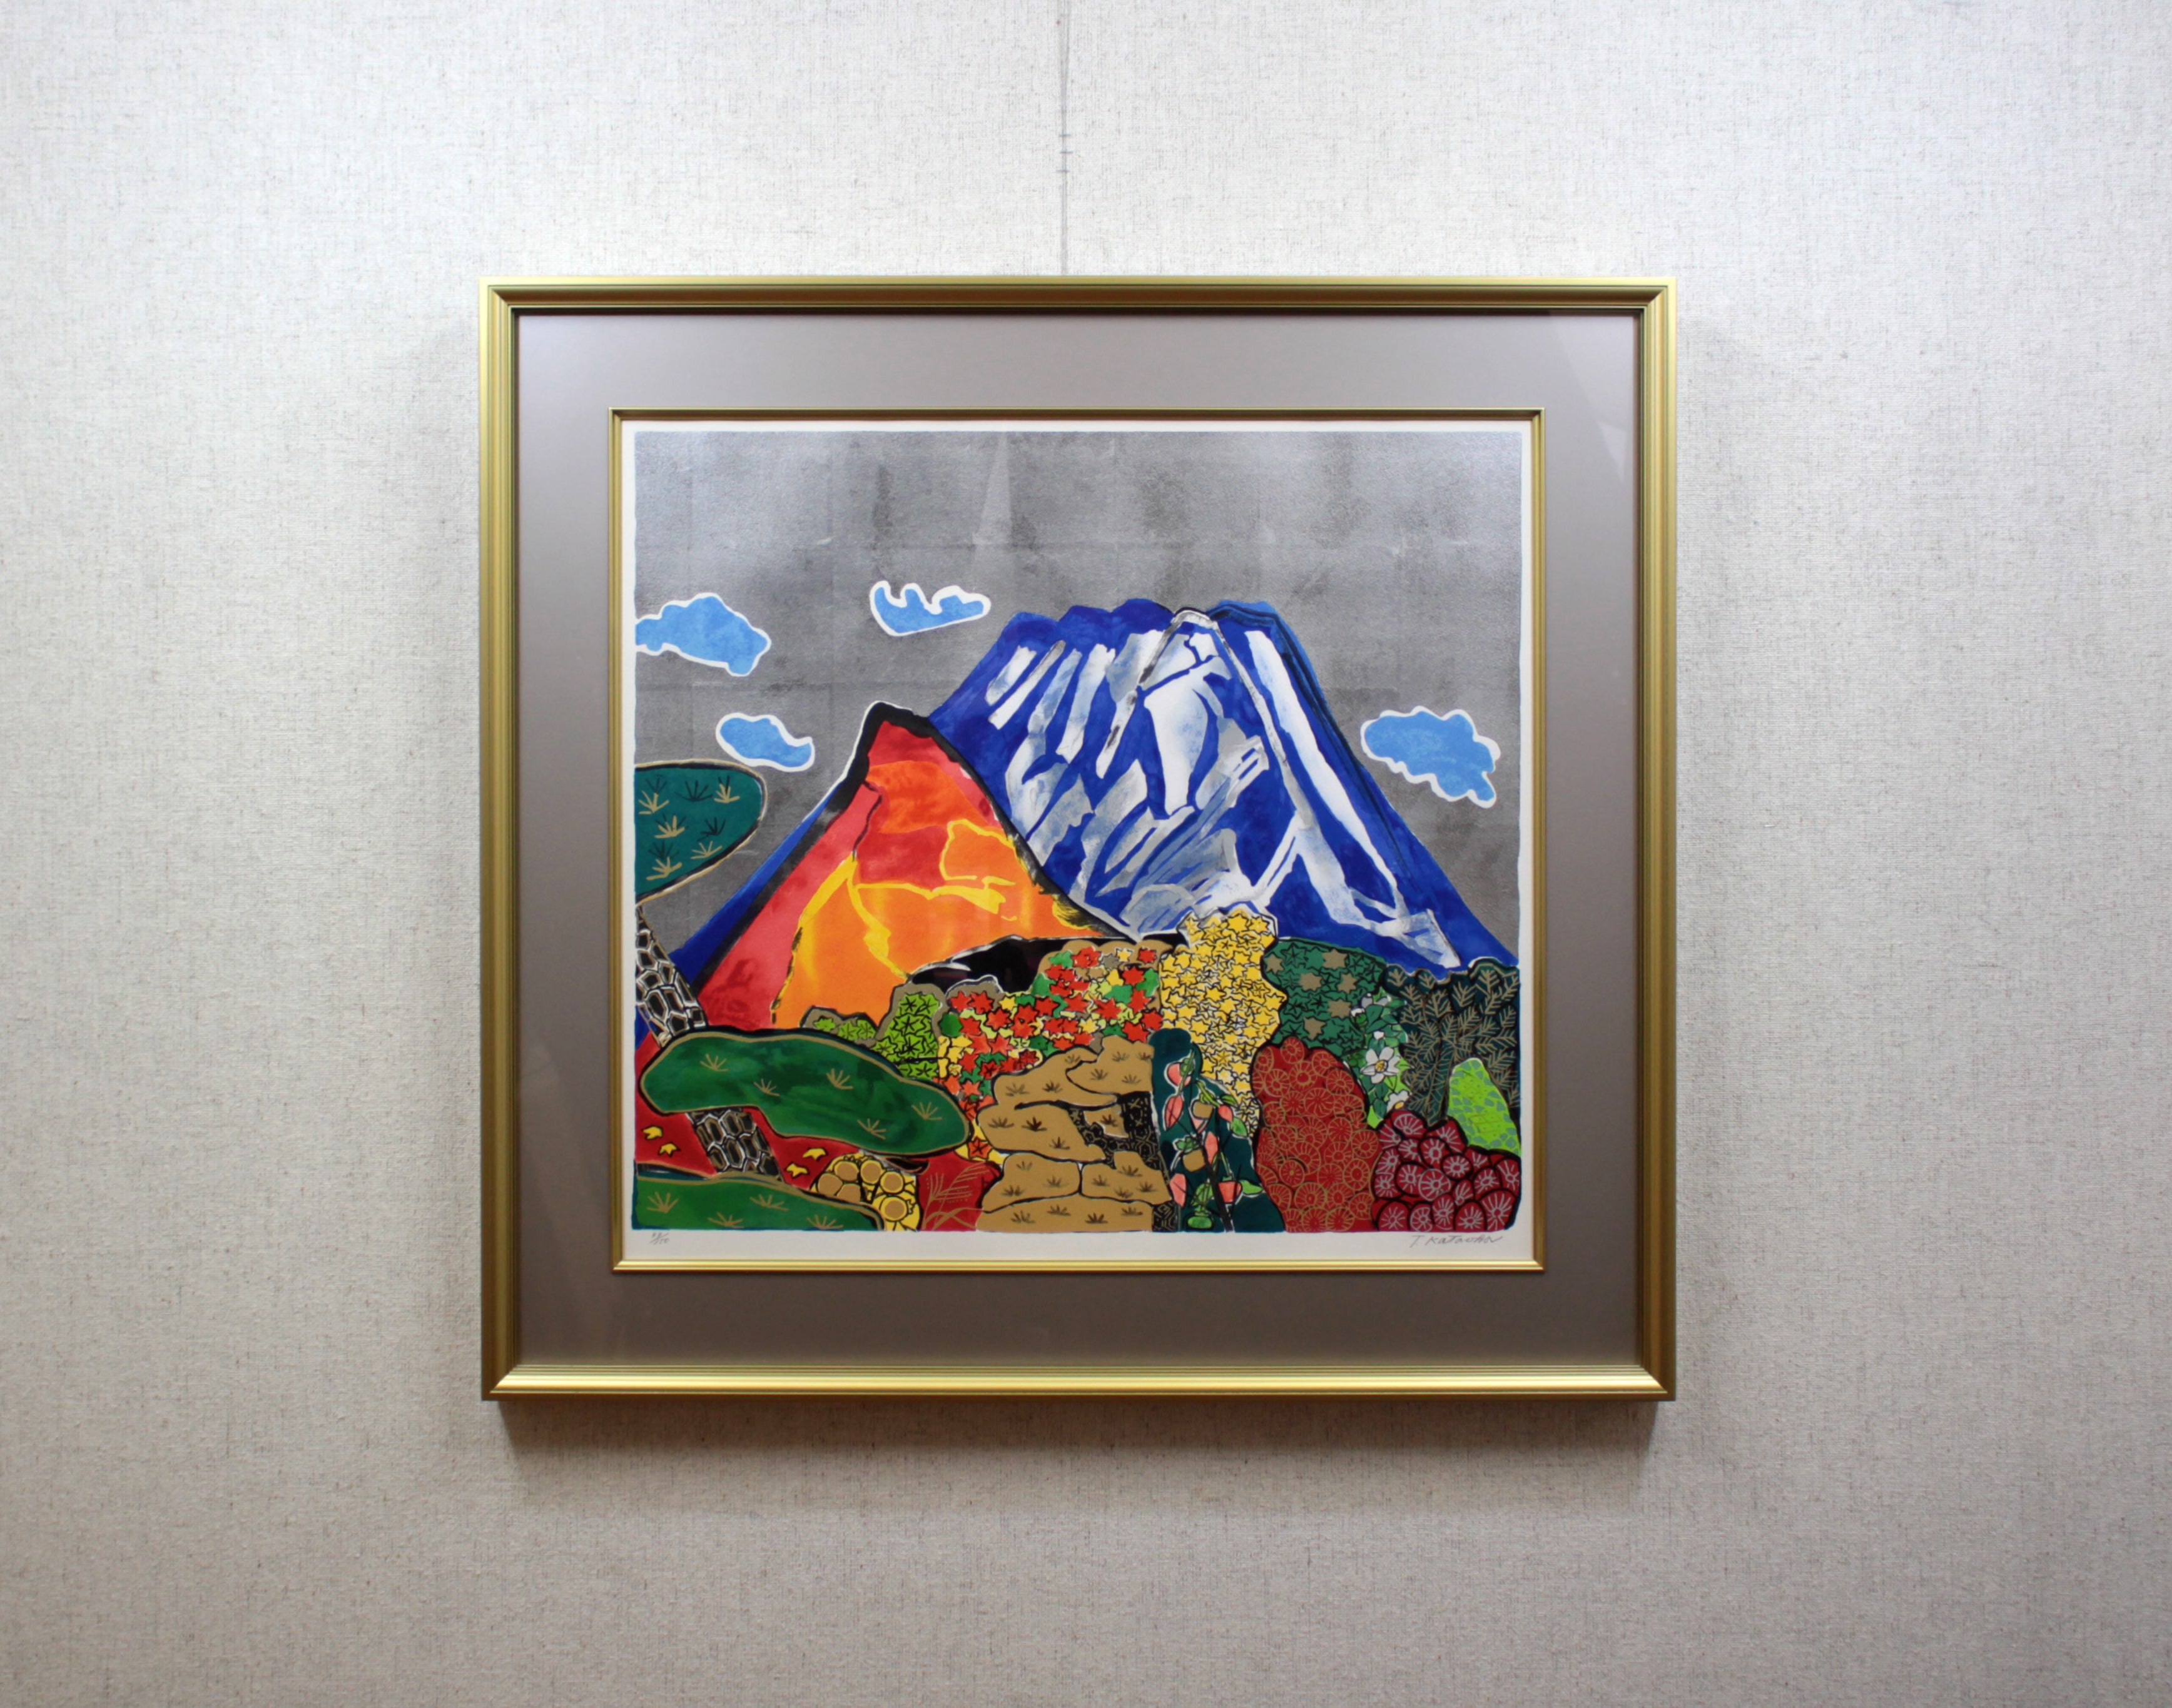 片岡球子 『錦織りなすめでたき富士』 リトグラフ - 北海道画廊